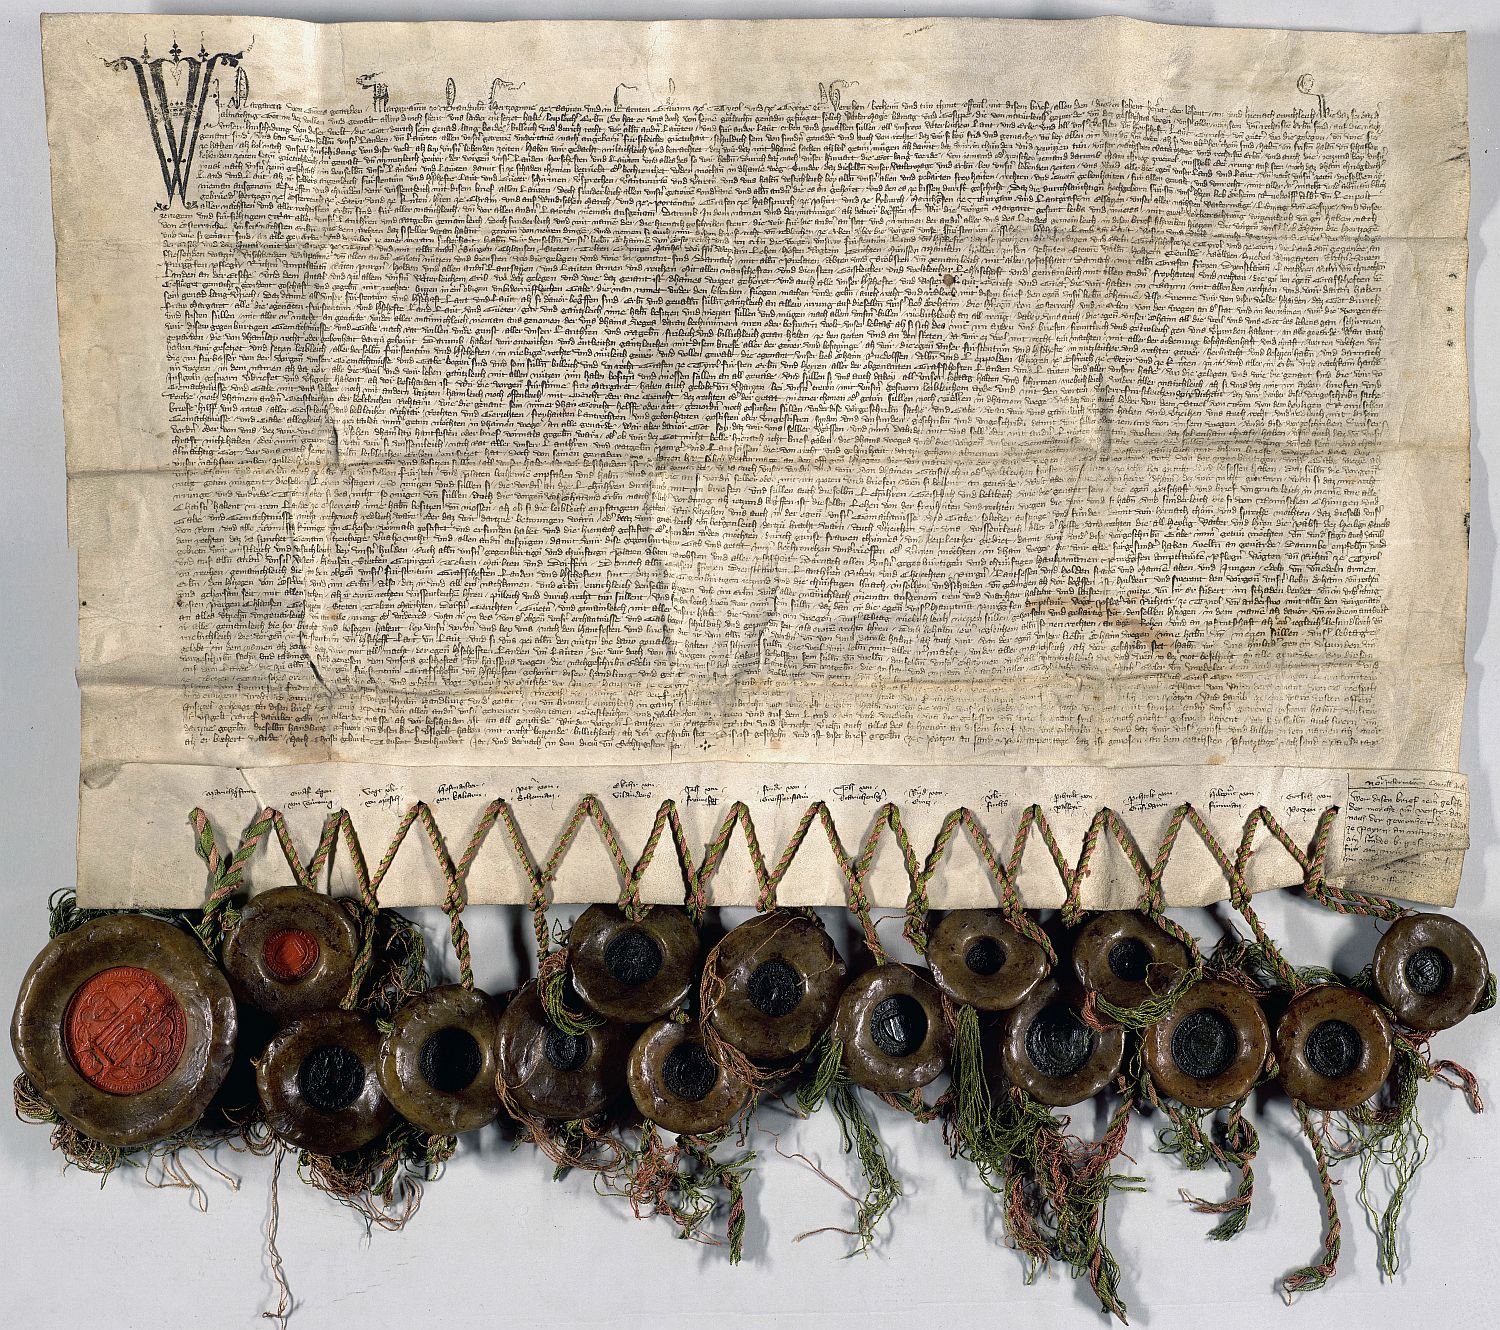 Urkunde Margarete "Maultasch" von 1336